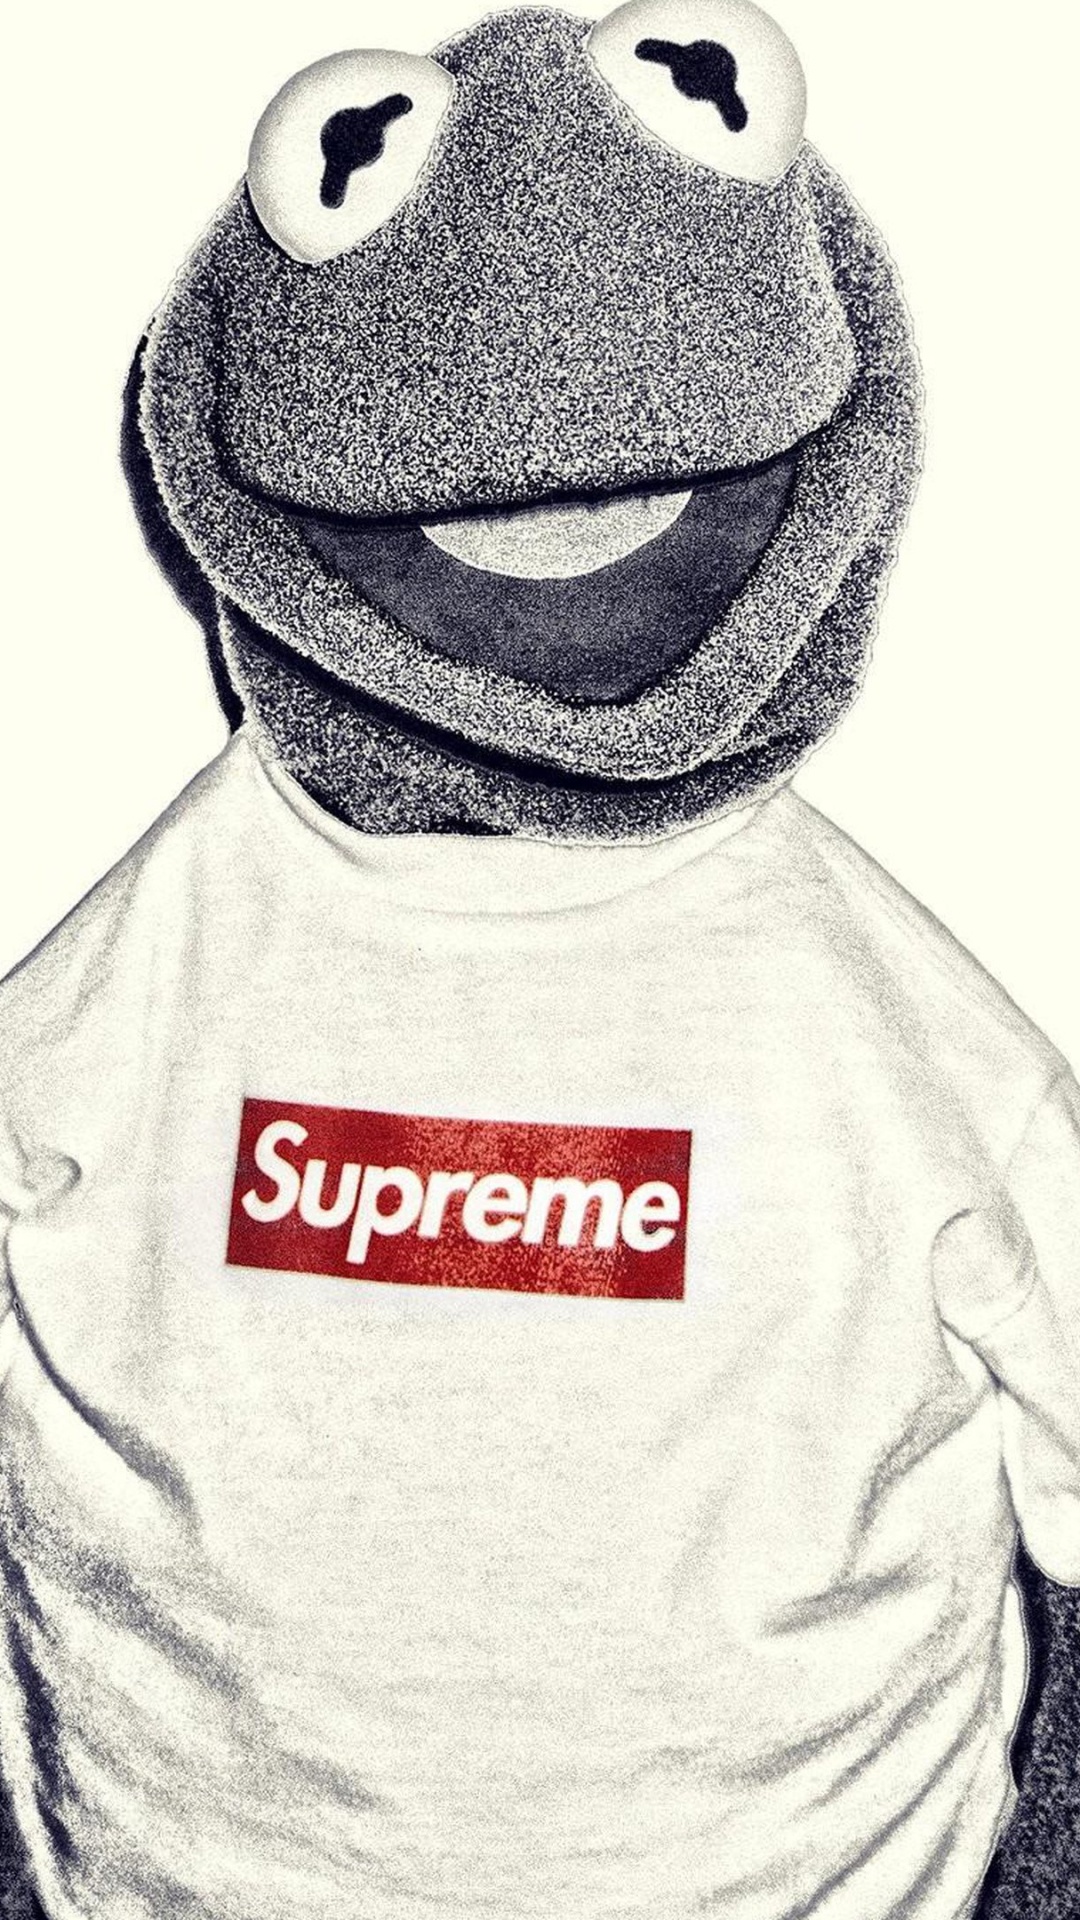 Kermit la Grenouille, Suprême, Les Vêtements D'extérieur, T-shirt, Louis Vuitton. Wallpaper in 1080x1920 Resolution